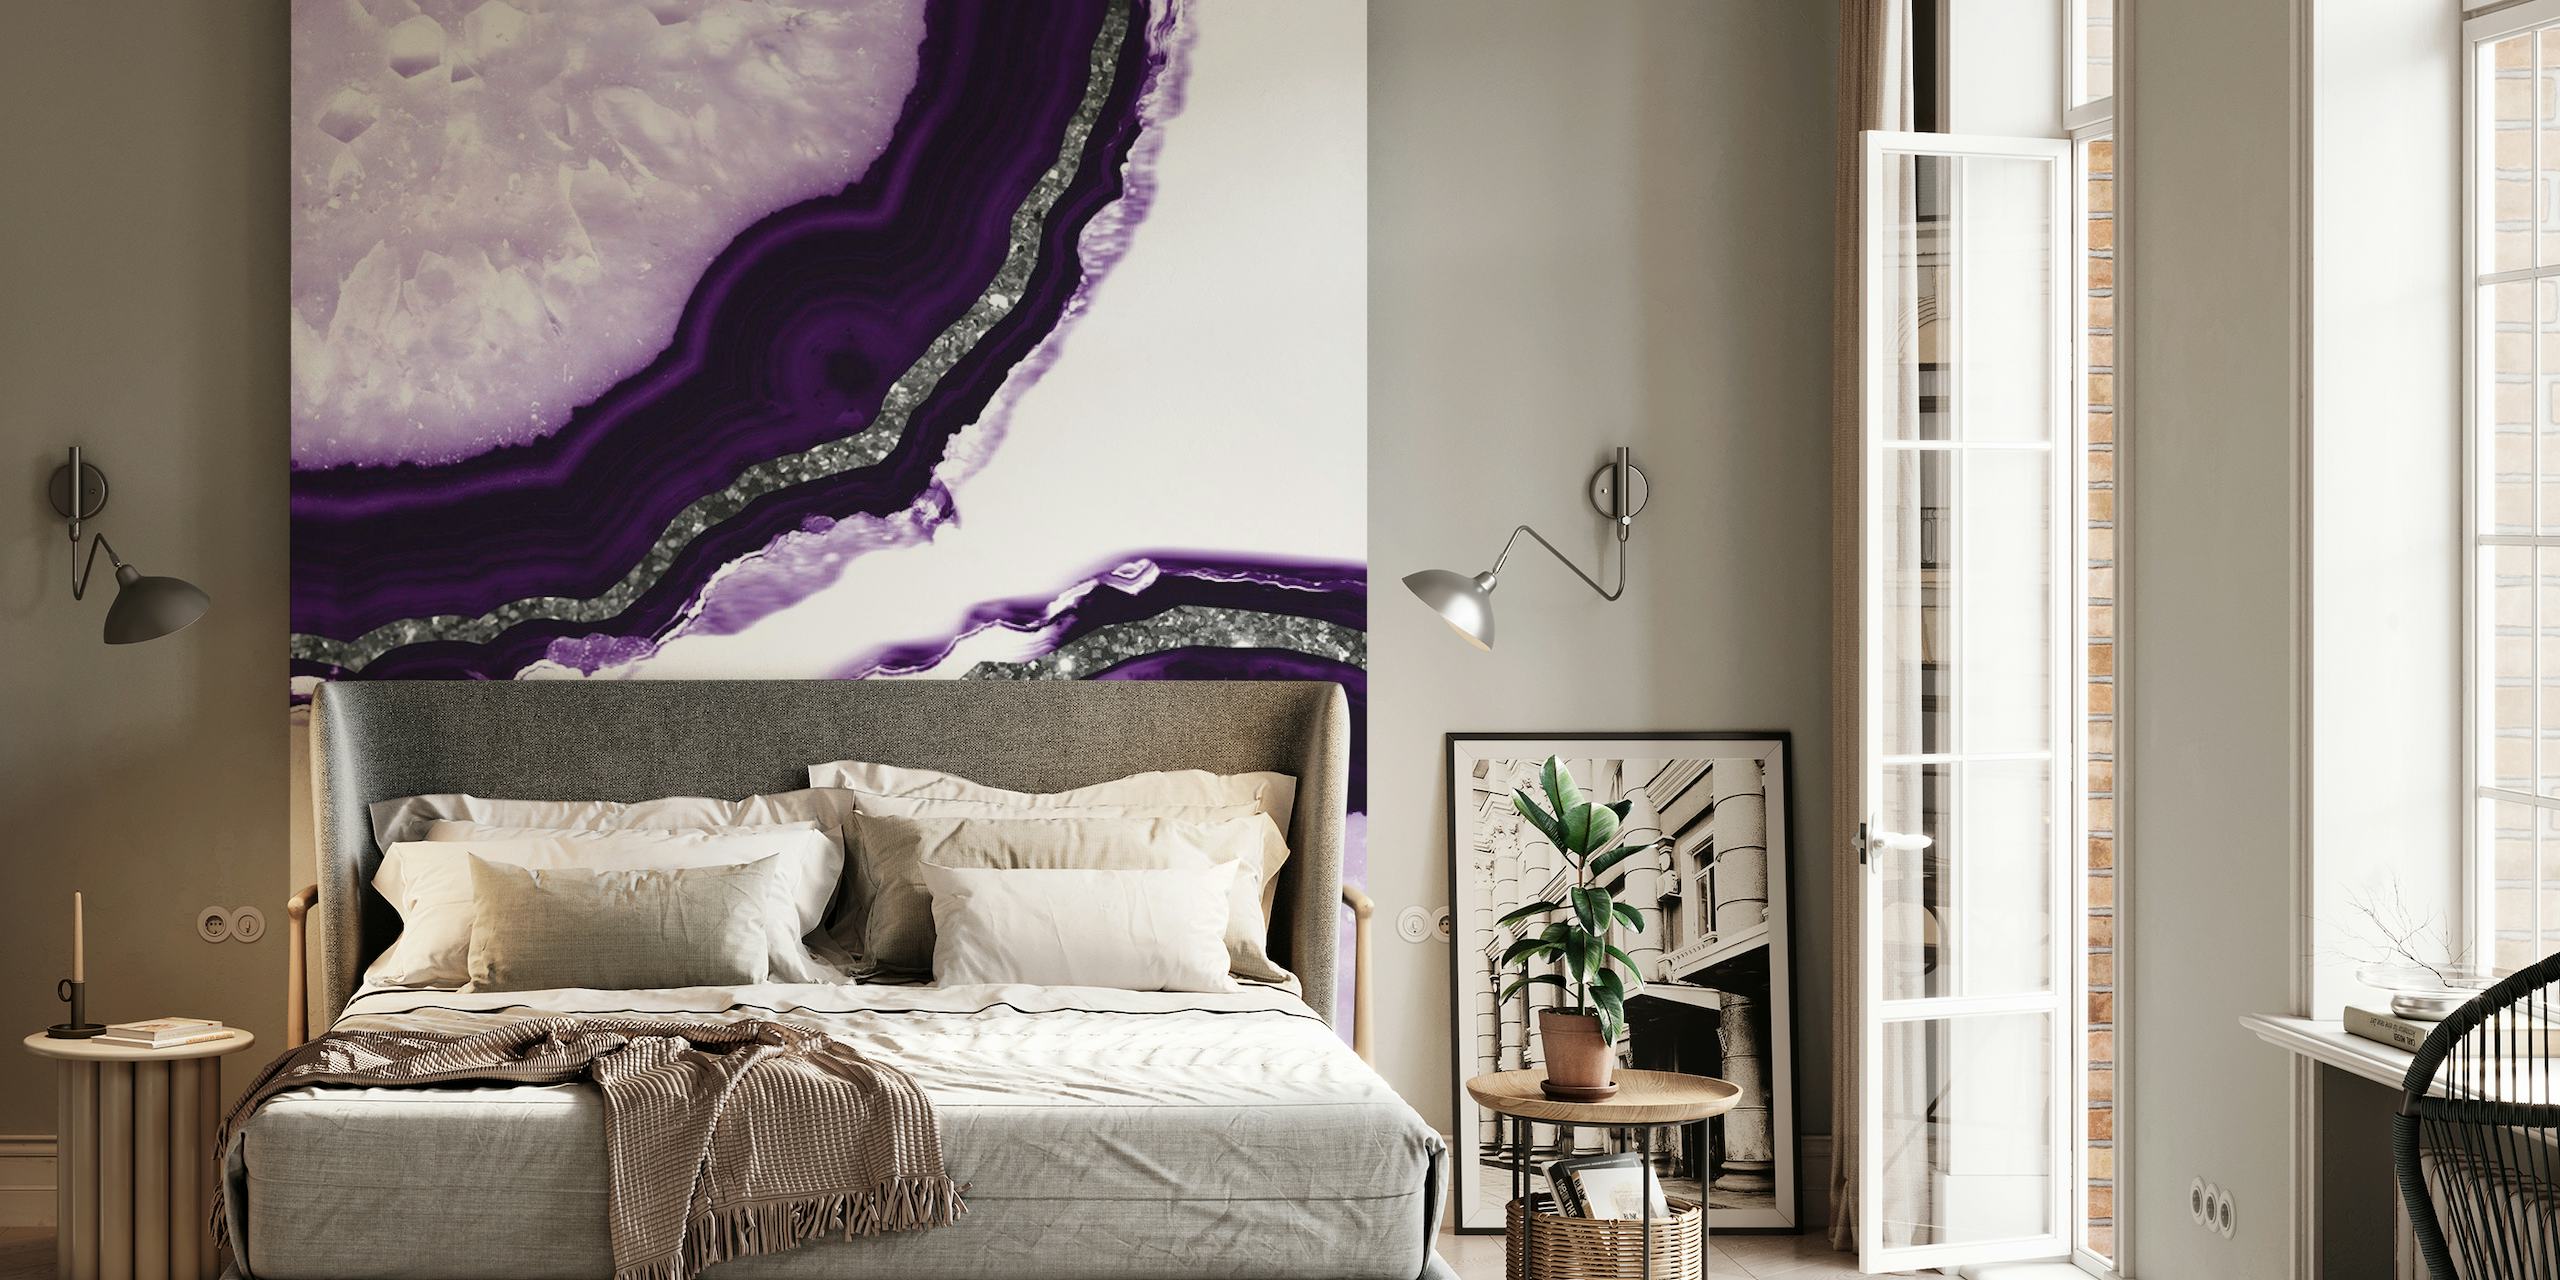 Primo piano del murale Agate Glitter Glam 12a con motivi in agata viola e bianca con dettagli glitter.